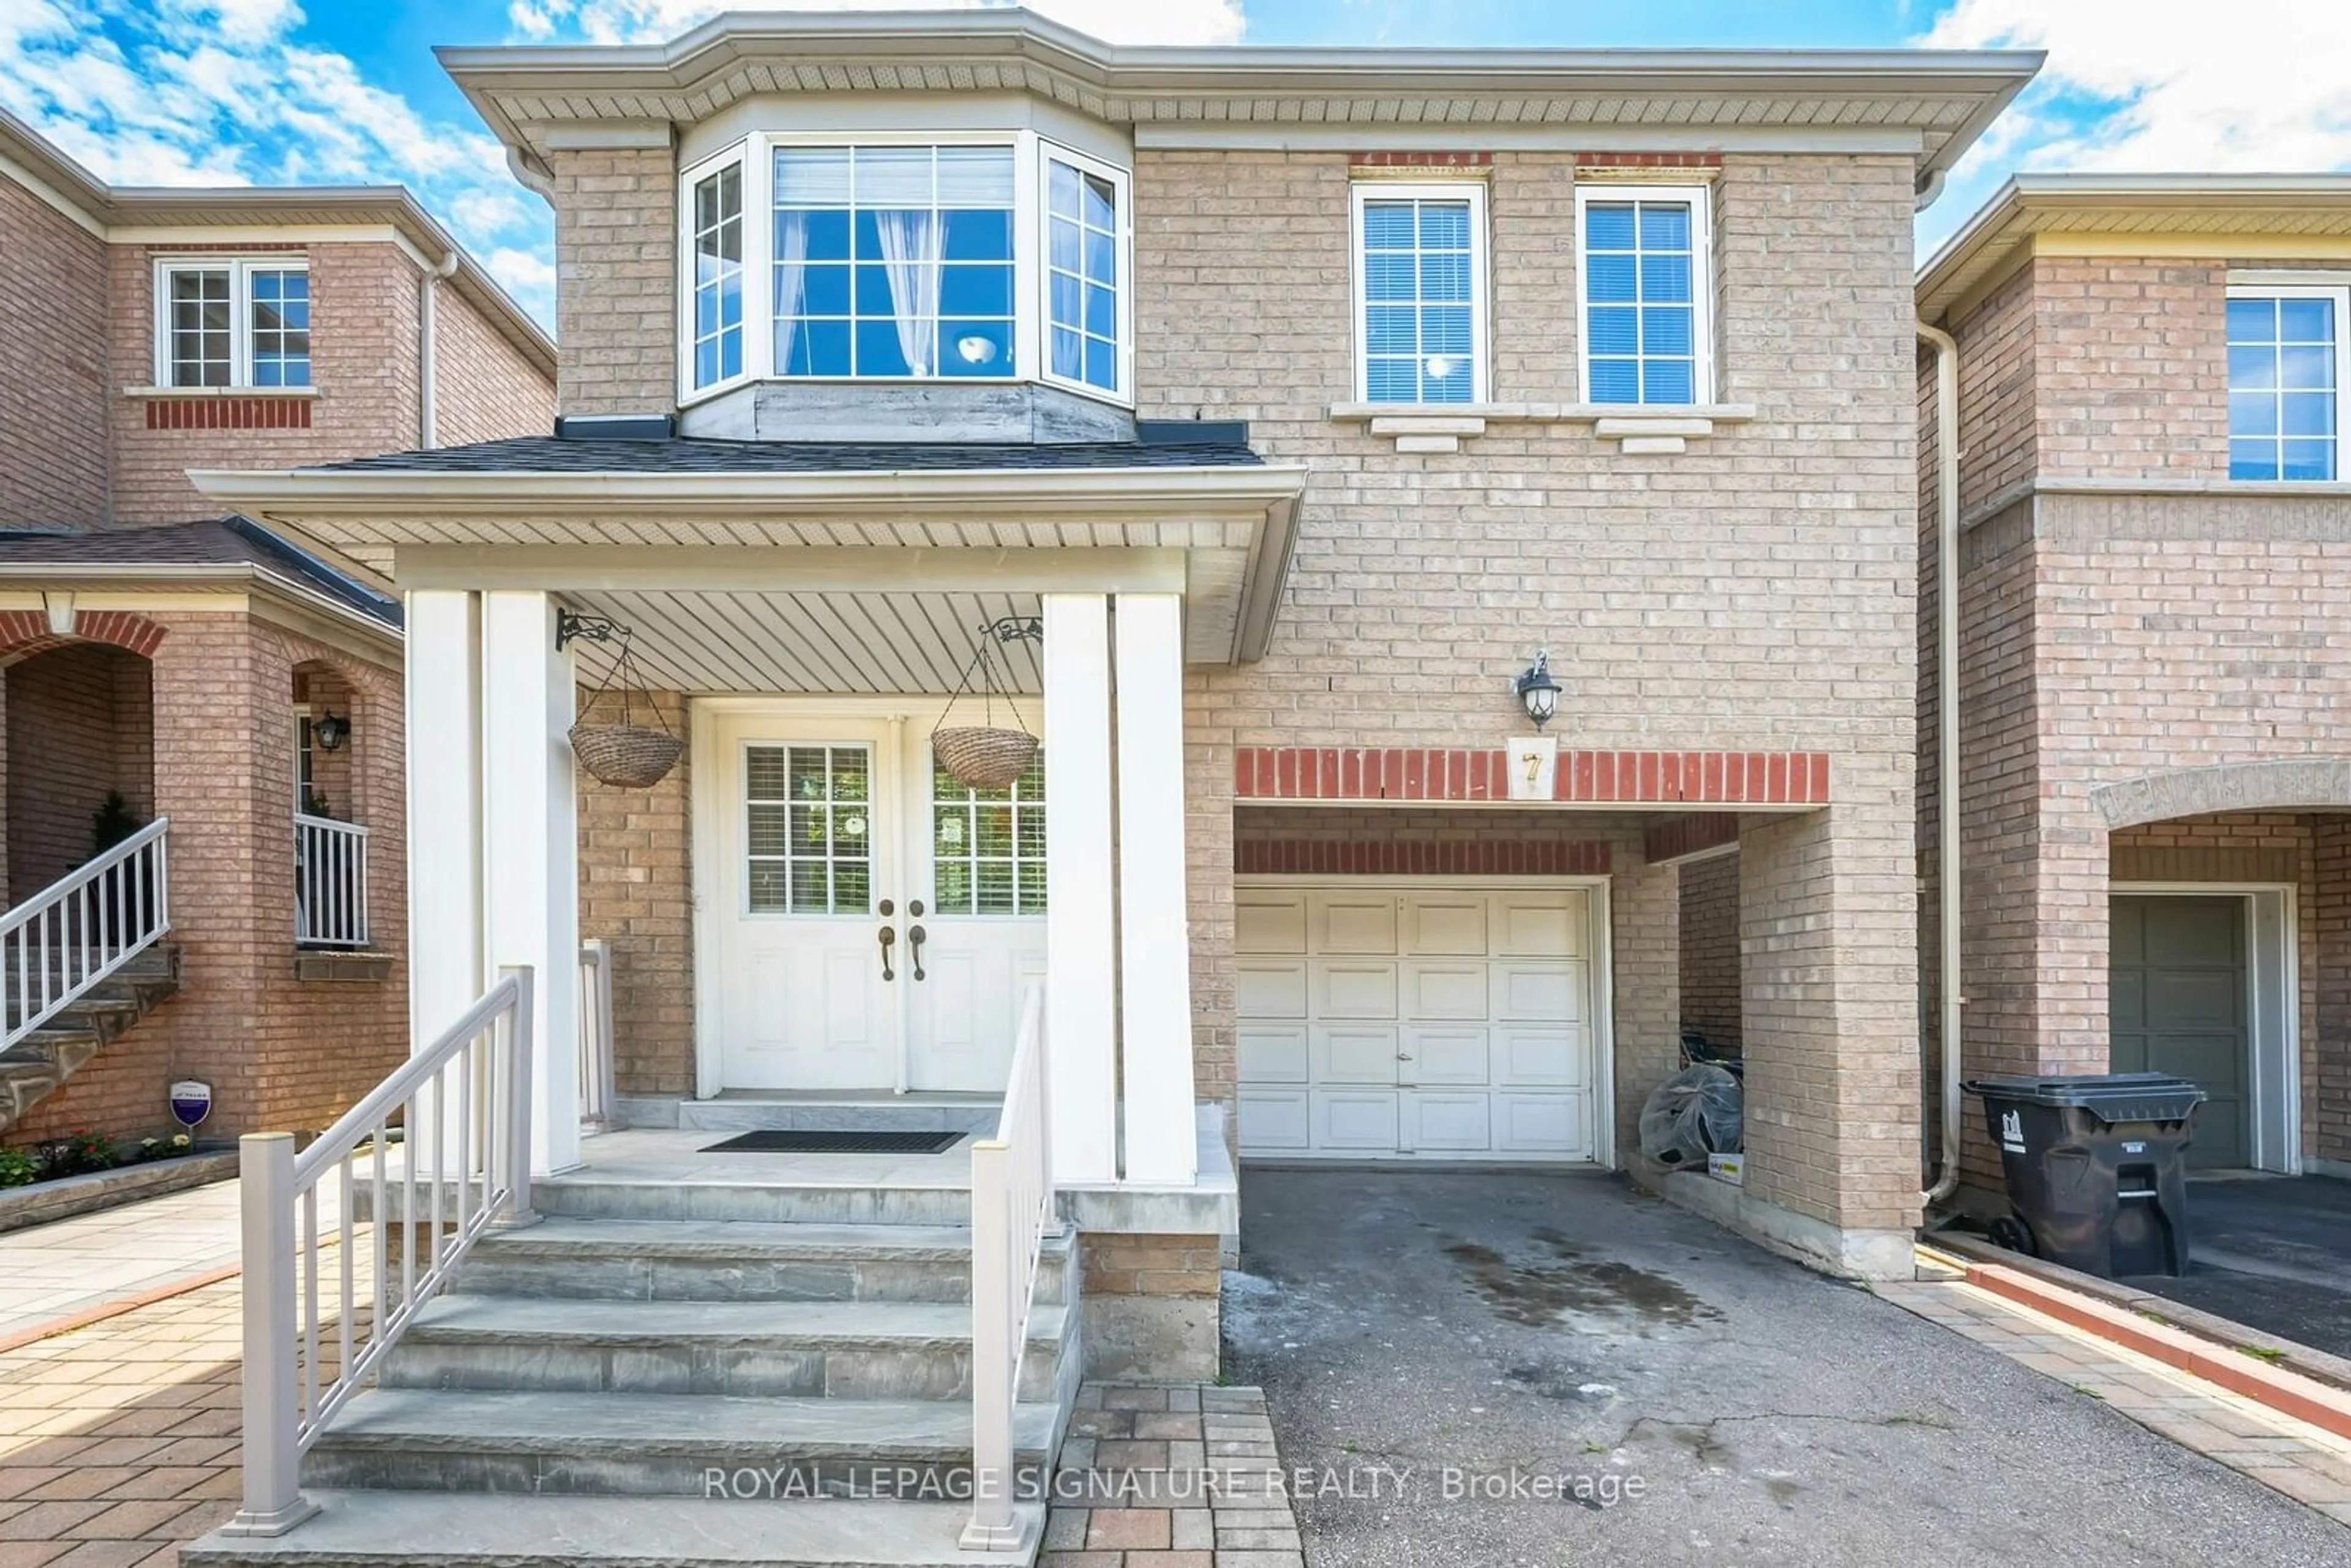 Home with brick exterior material for 7 Via Cassia Dr, Toronto Ontario M6M 5K8